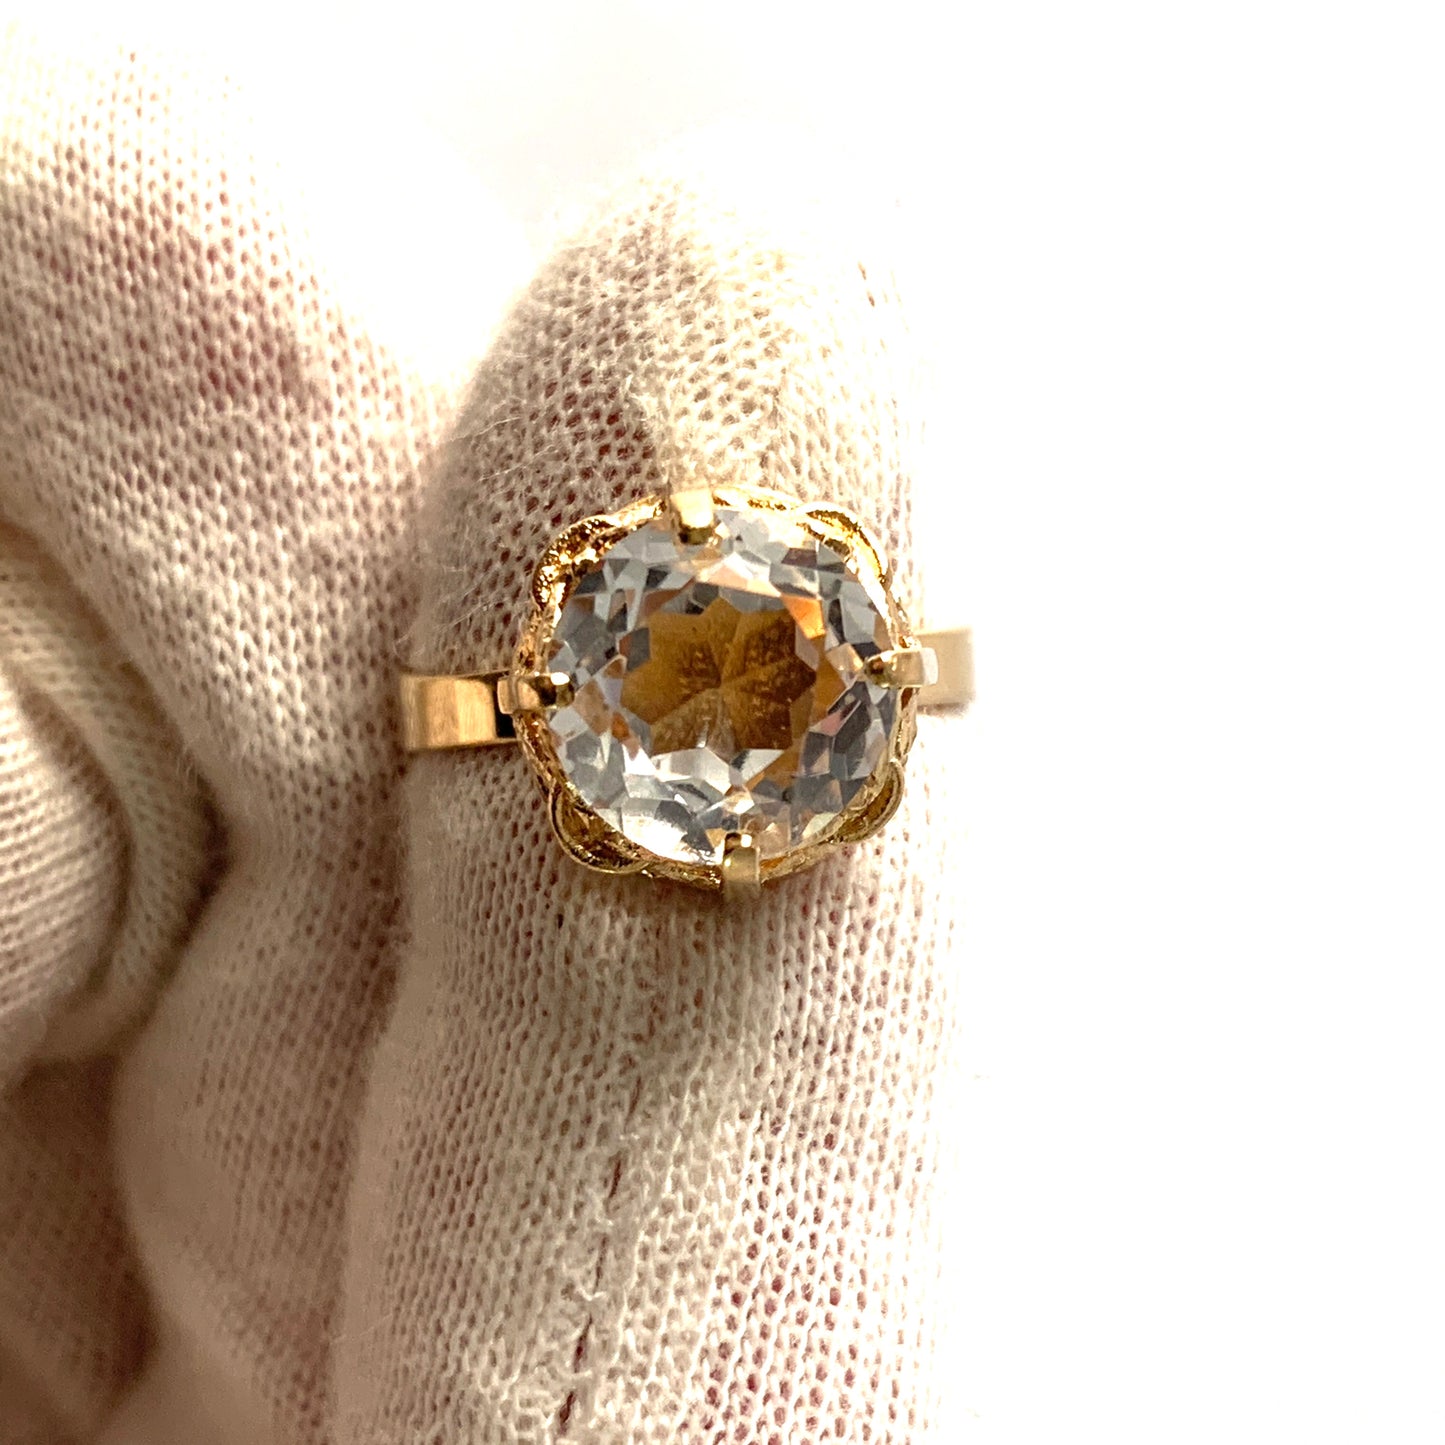 Finland 1970s. Vintage 18k Gold Rock Crystal Ring.